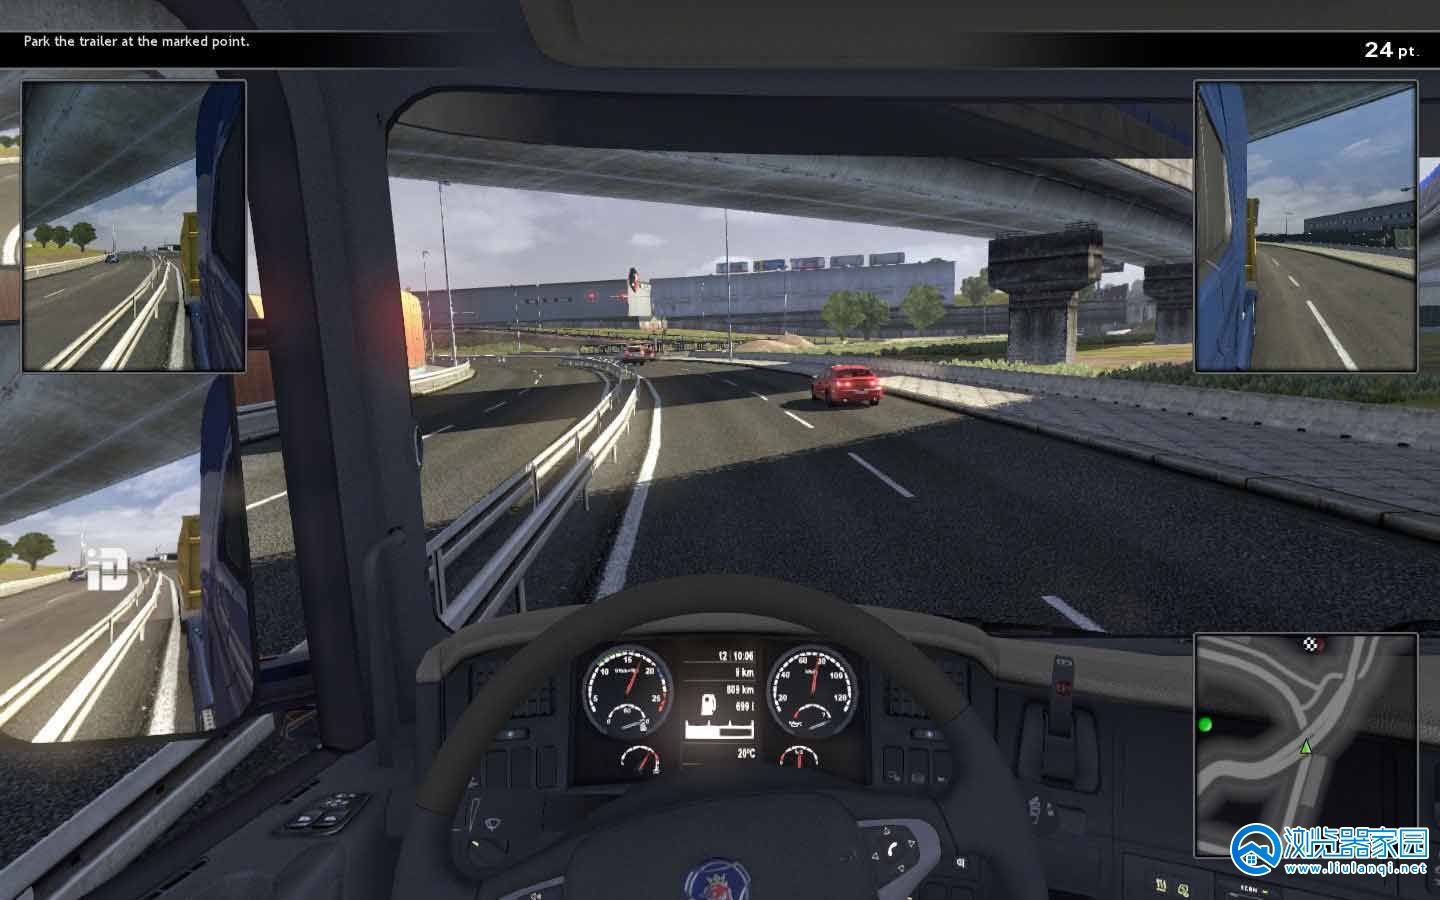 模拟司机驾驶游戏合集